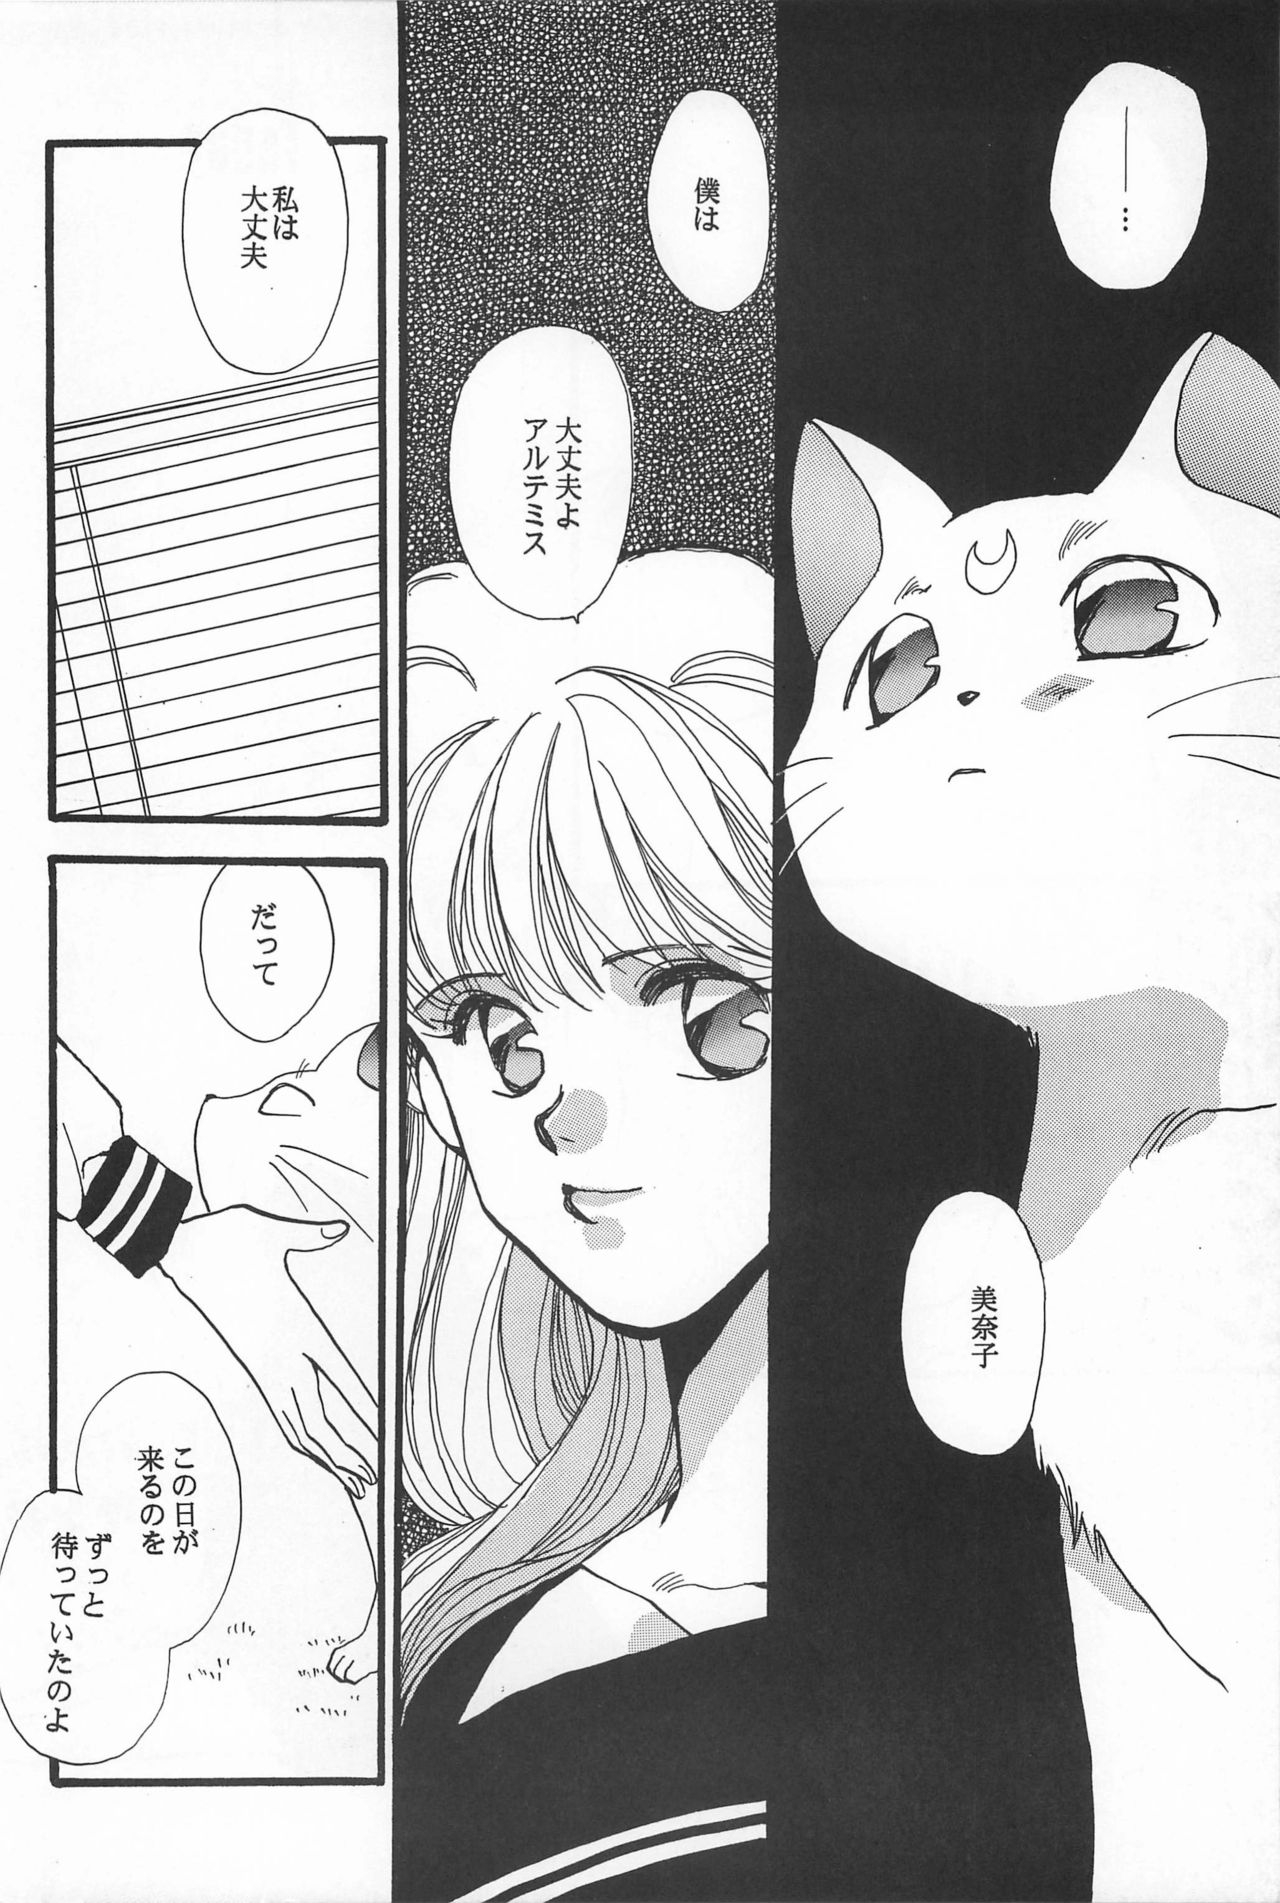 [Hello World (Muttri Moony)] Kaze no You ni Yume no You ni - Sailor Moon Collection (Sailor Moon) 113